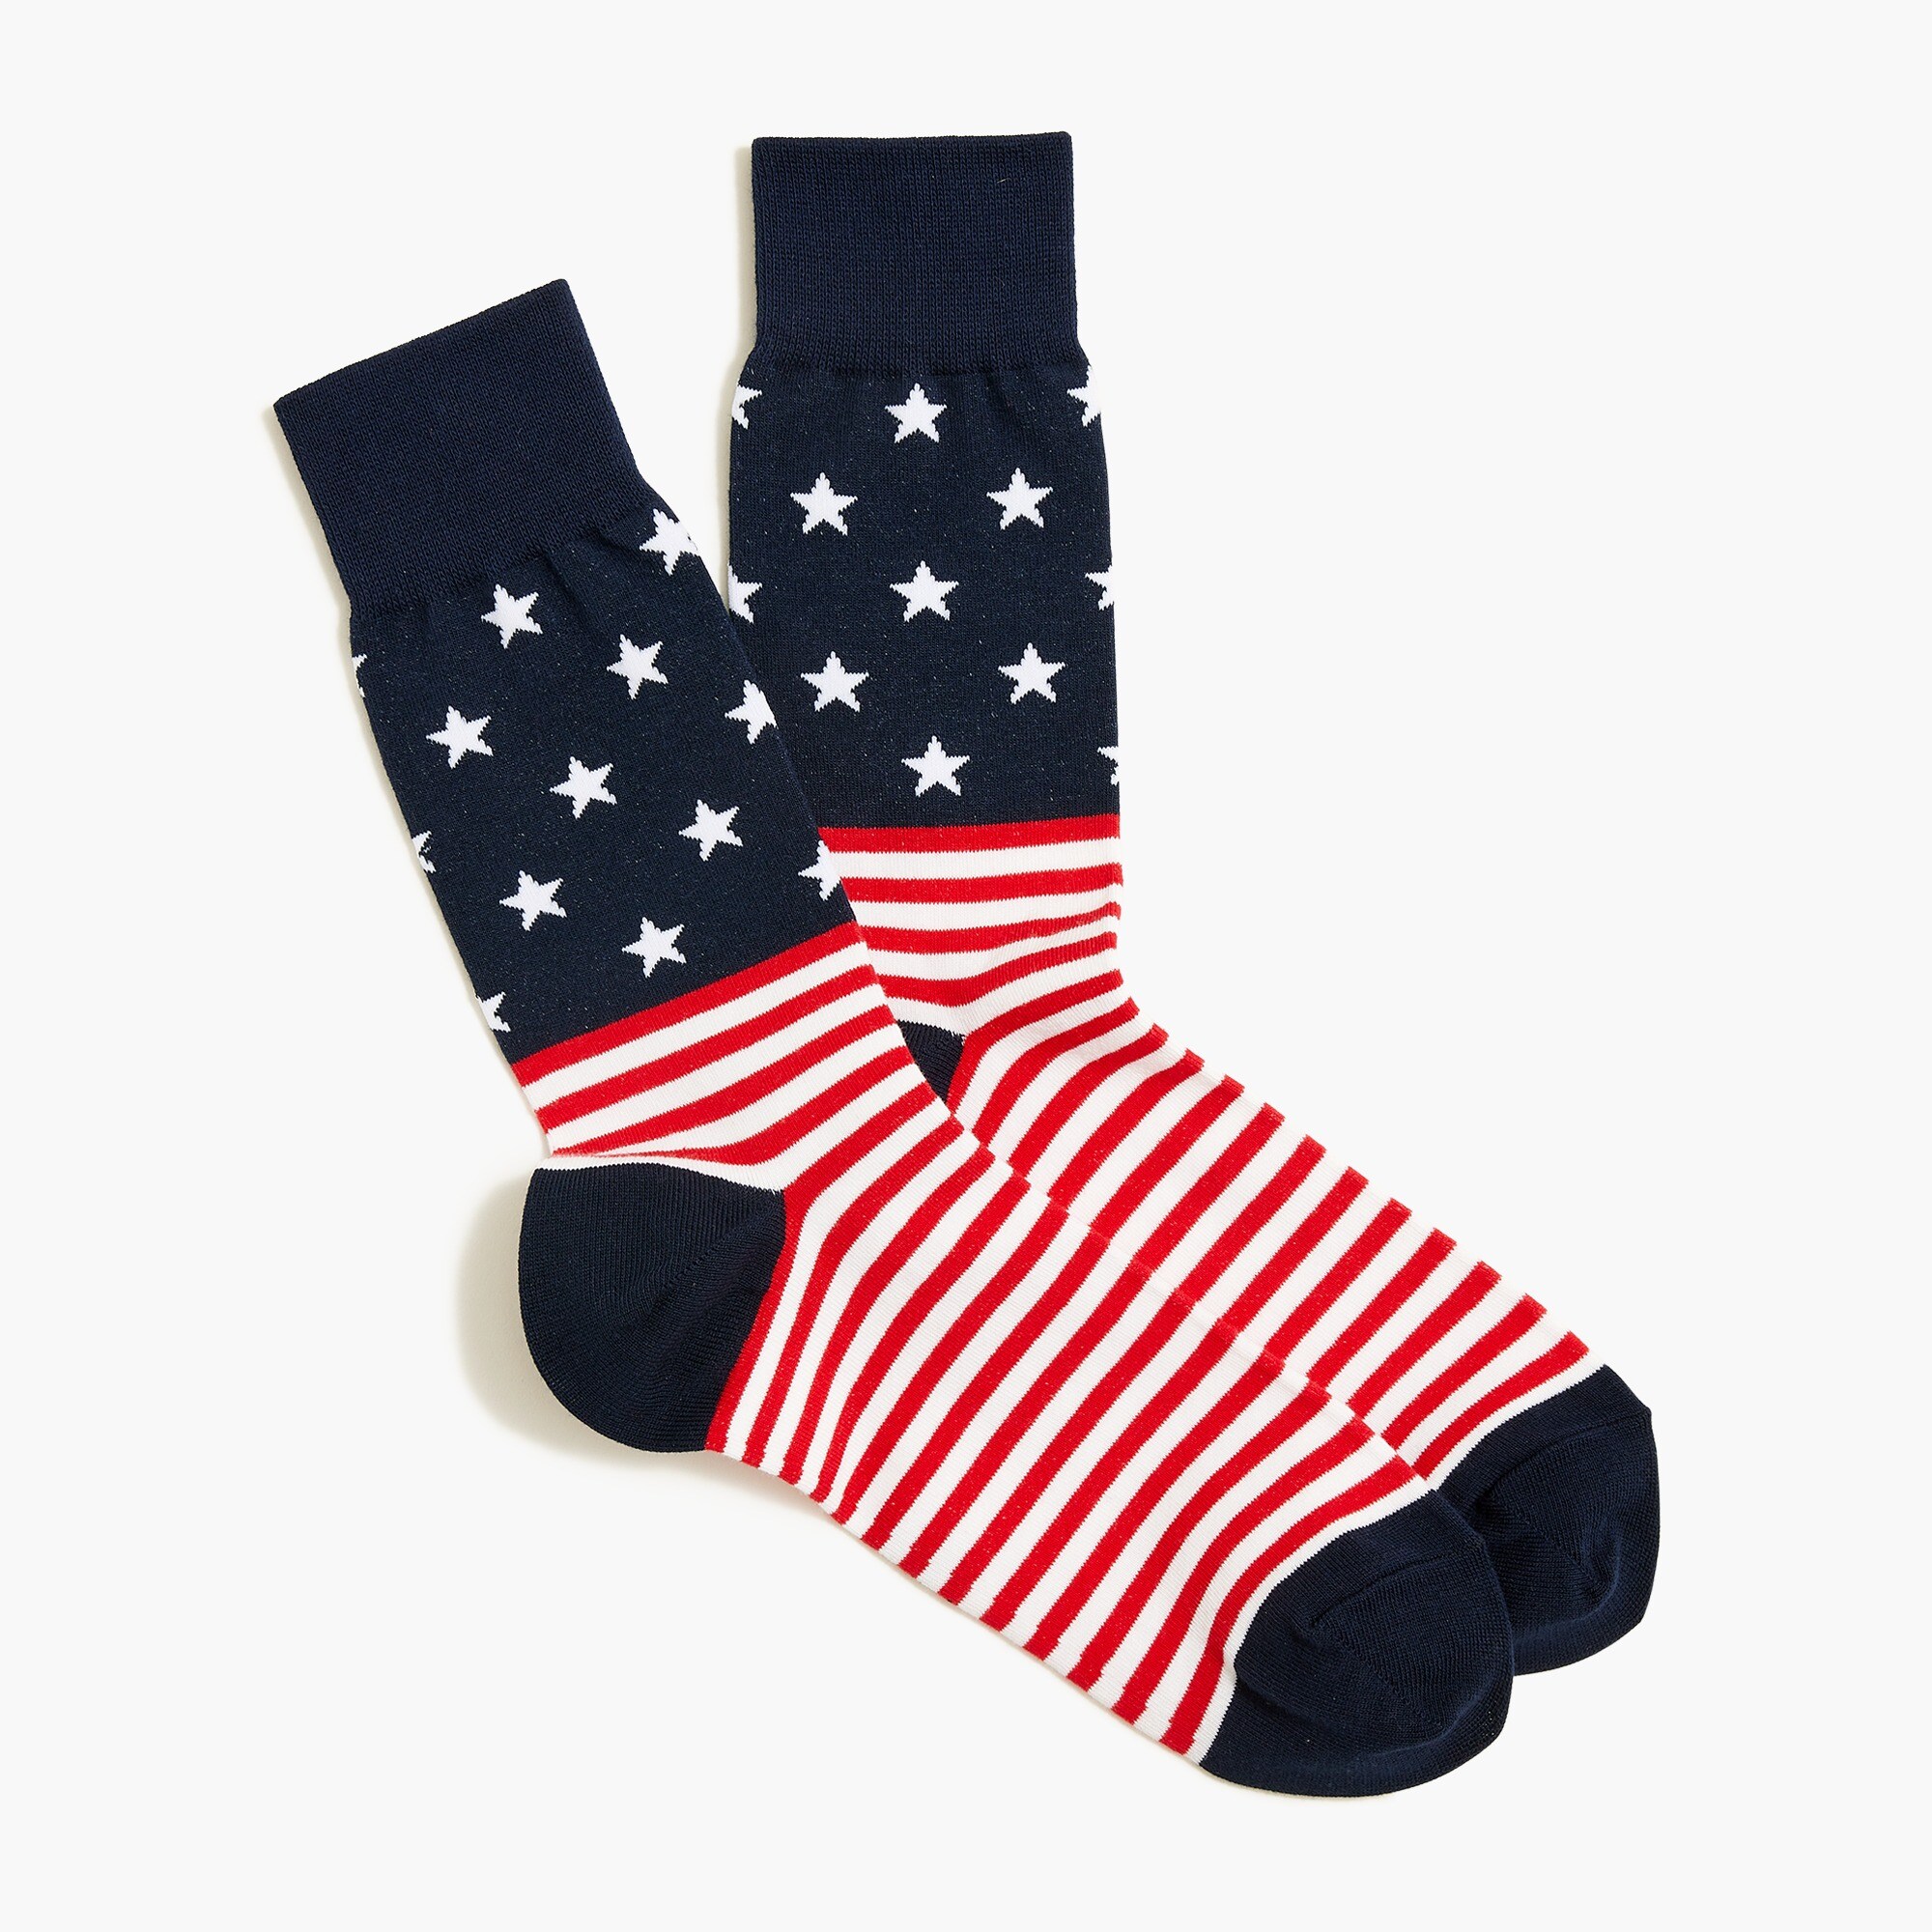  Flag socks